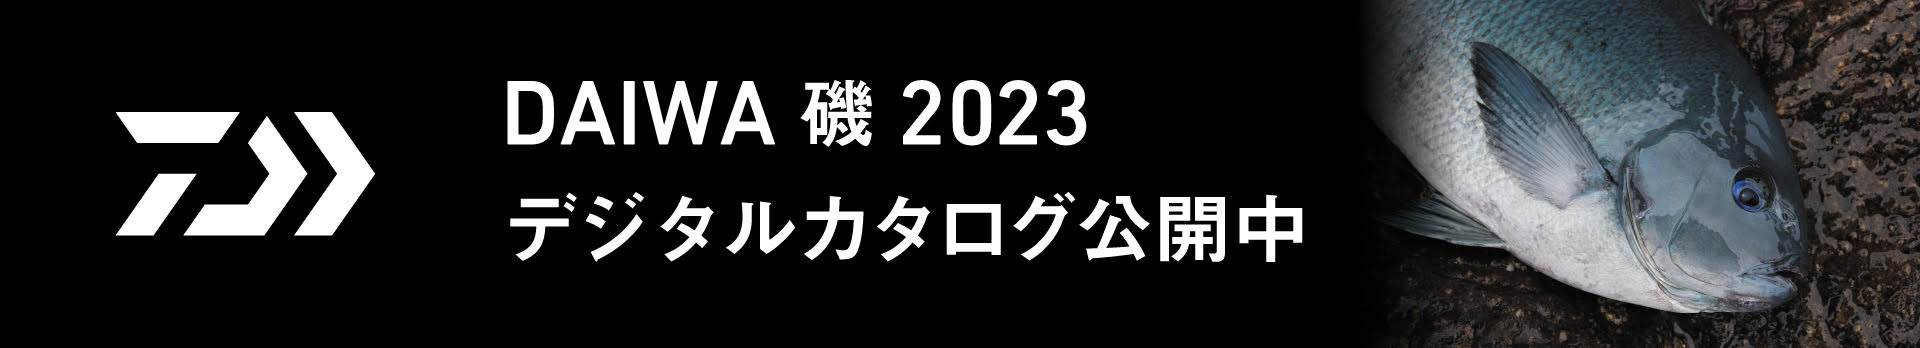 DAIWA 磯 2023年度 デジタルカタログはこちらで公開中